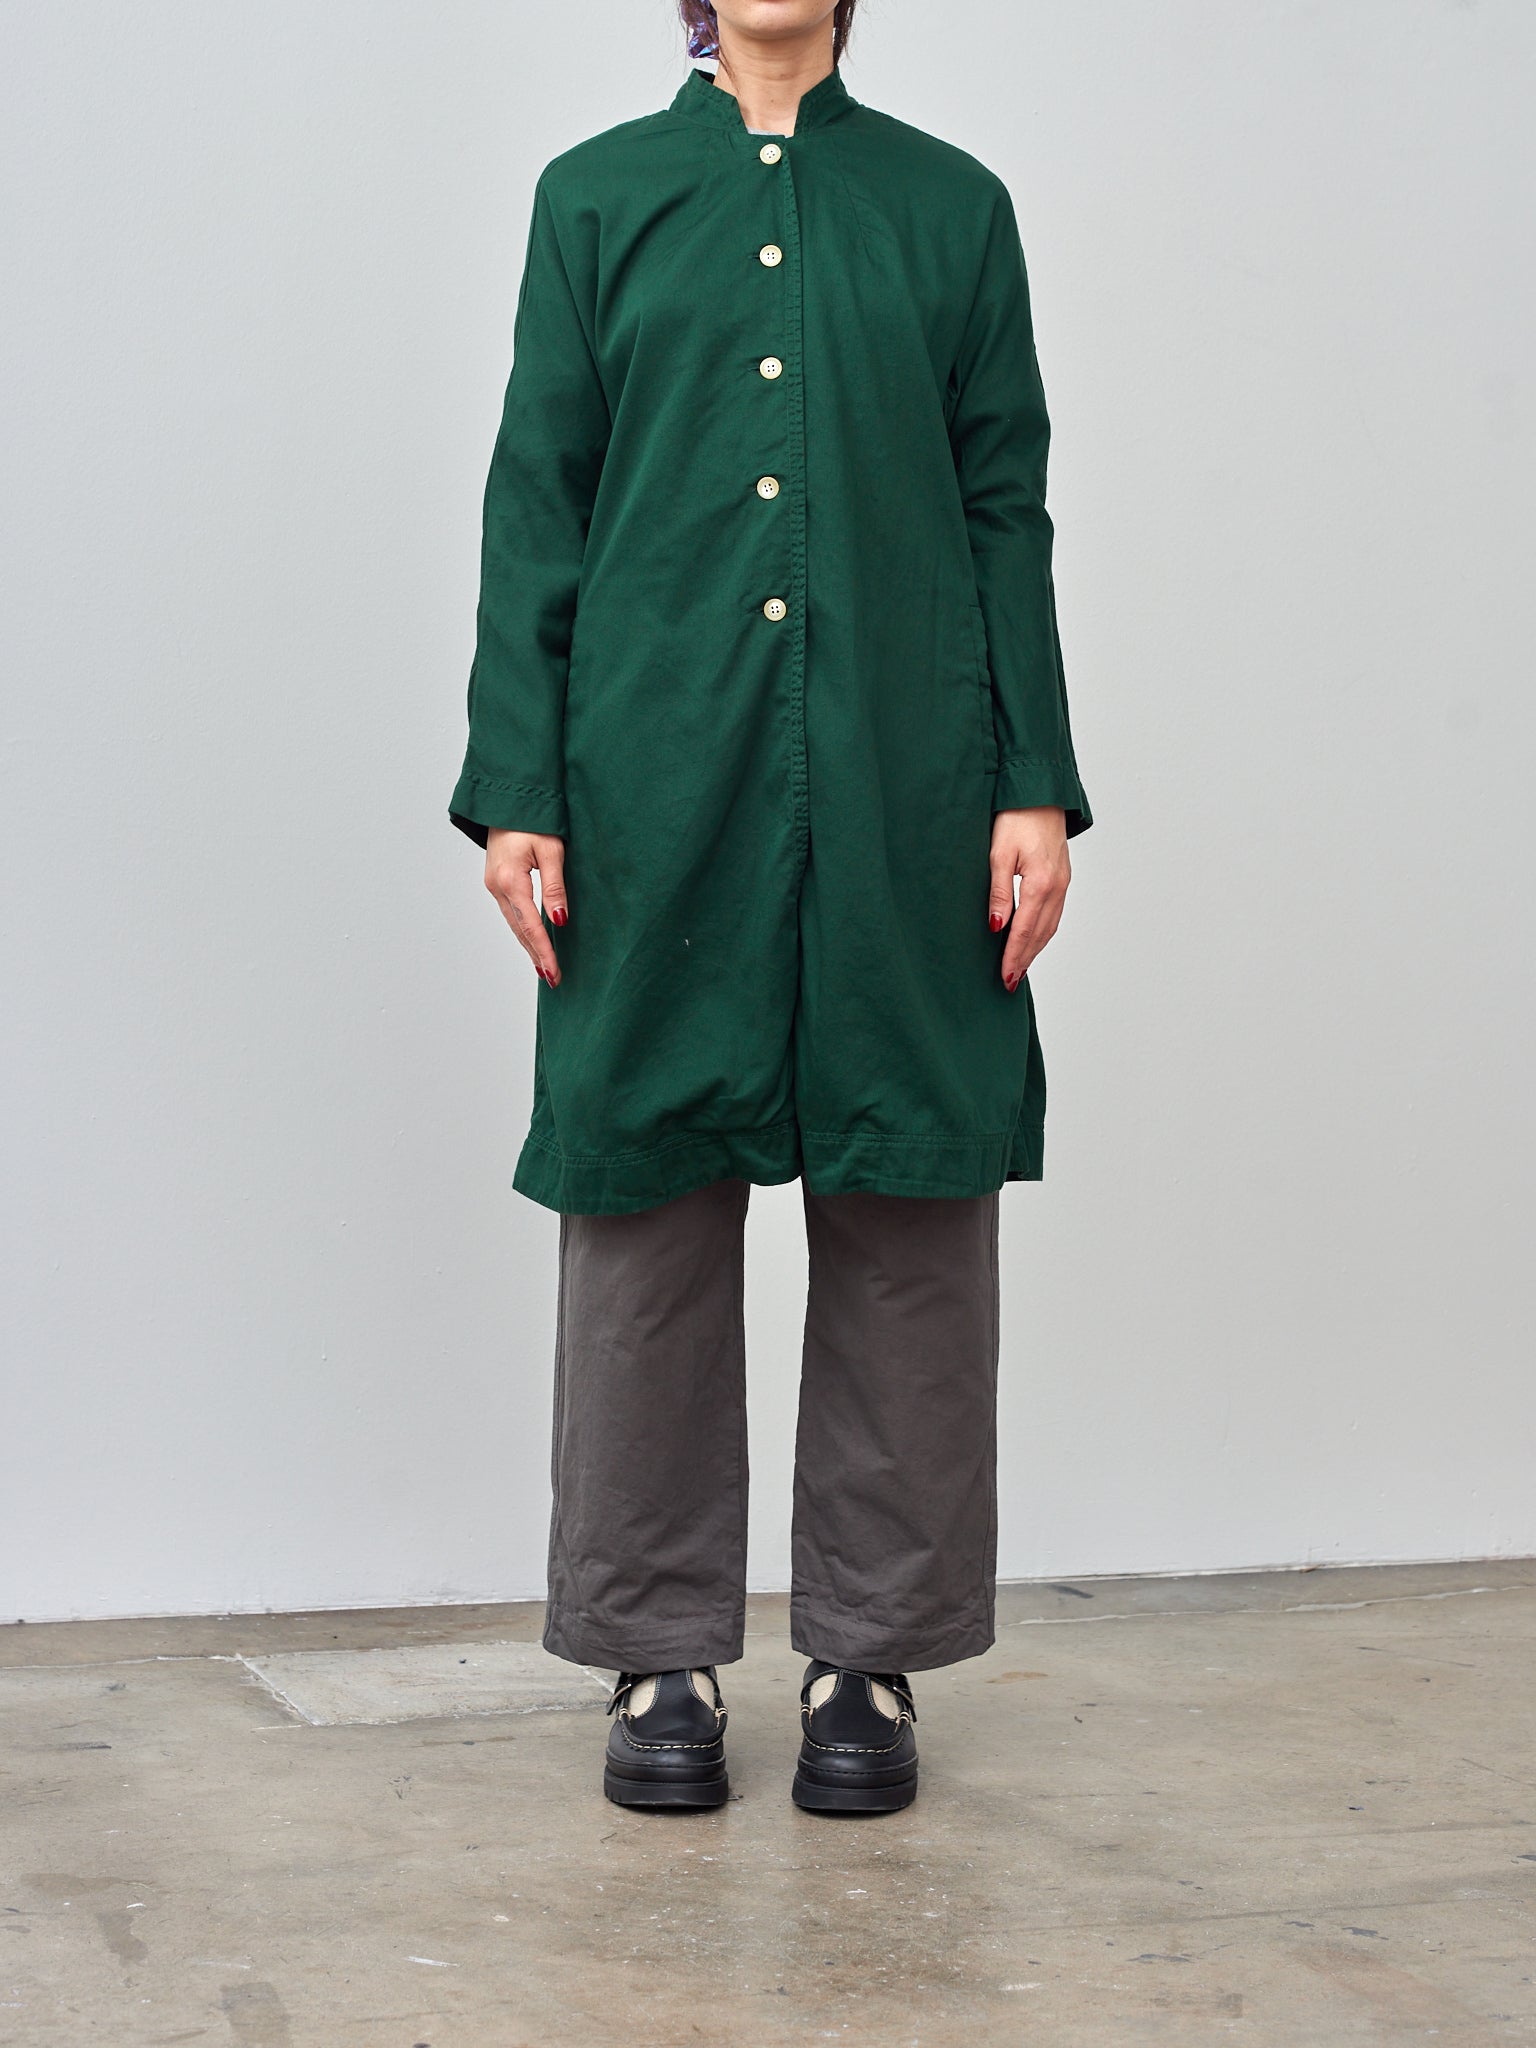 Namu Shop - Veritecoeur Arrow Coat - Green